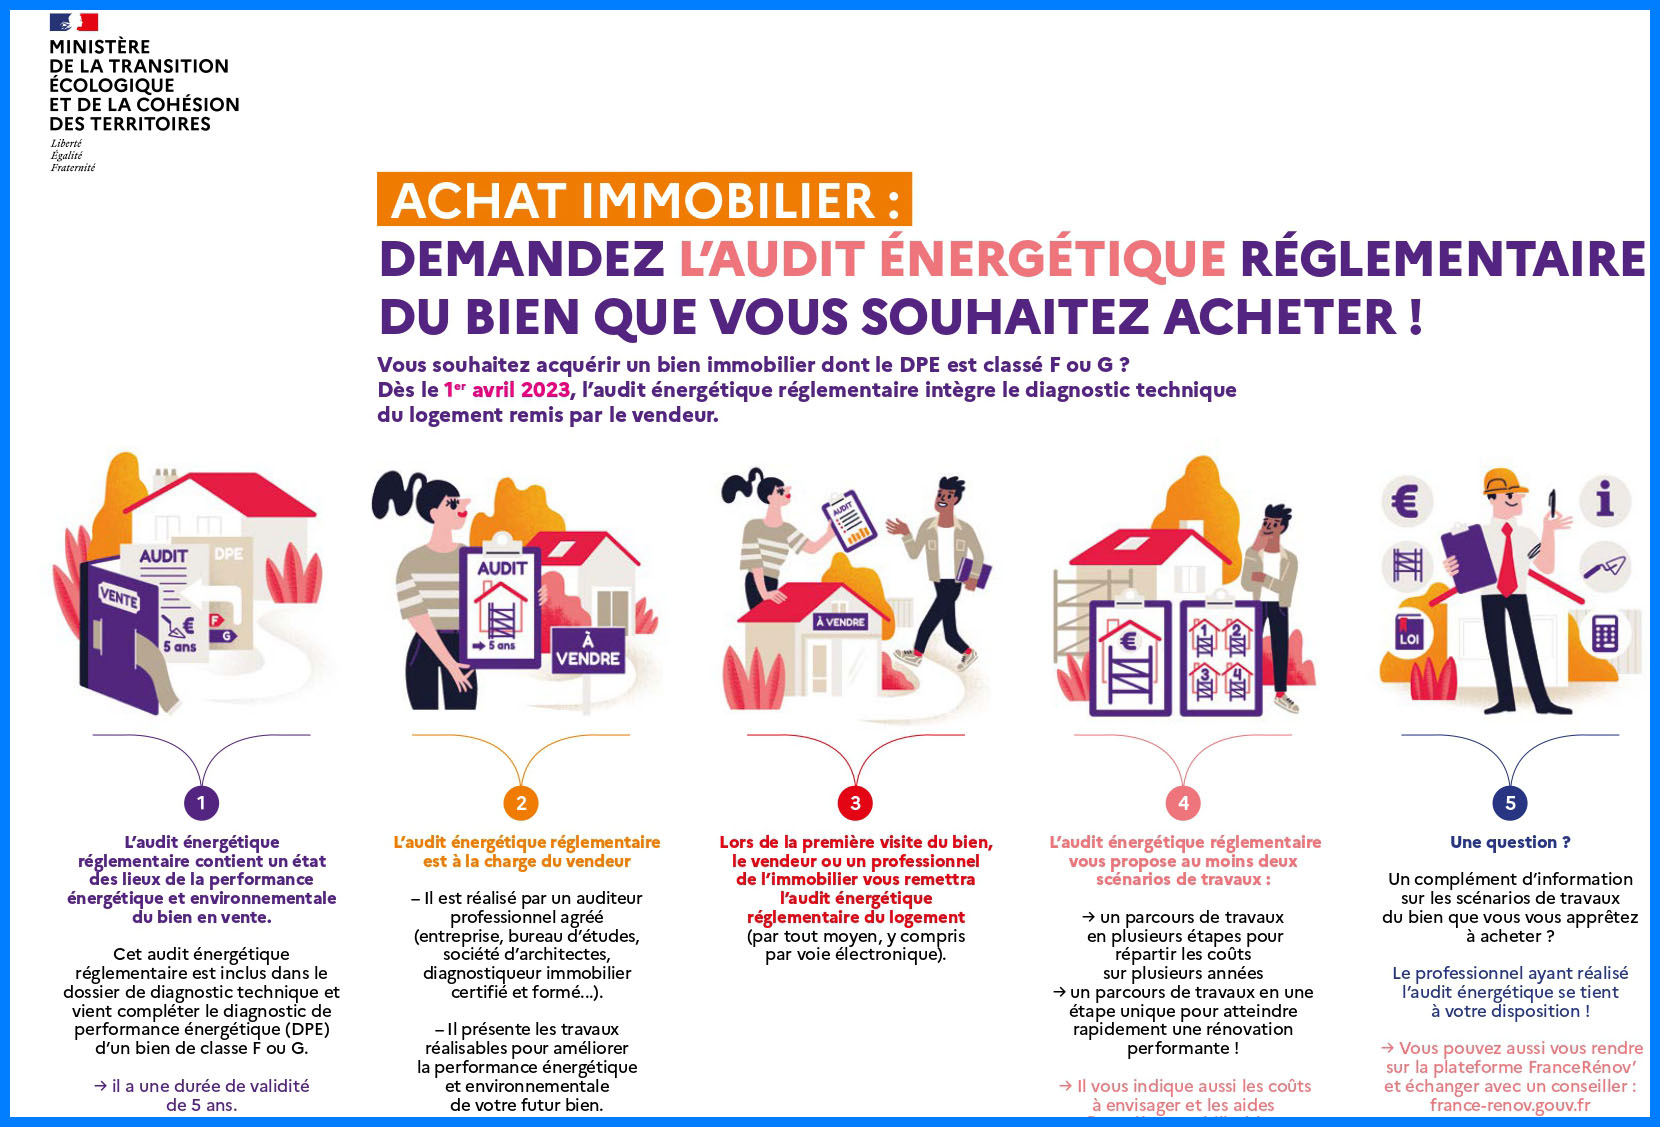 Audit Energetique Montreuil 93100